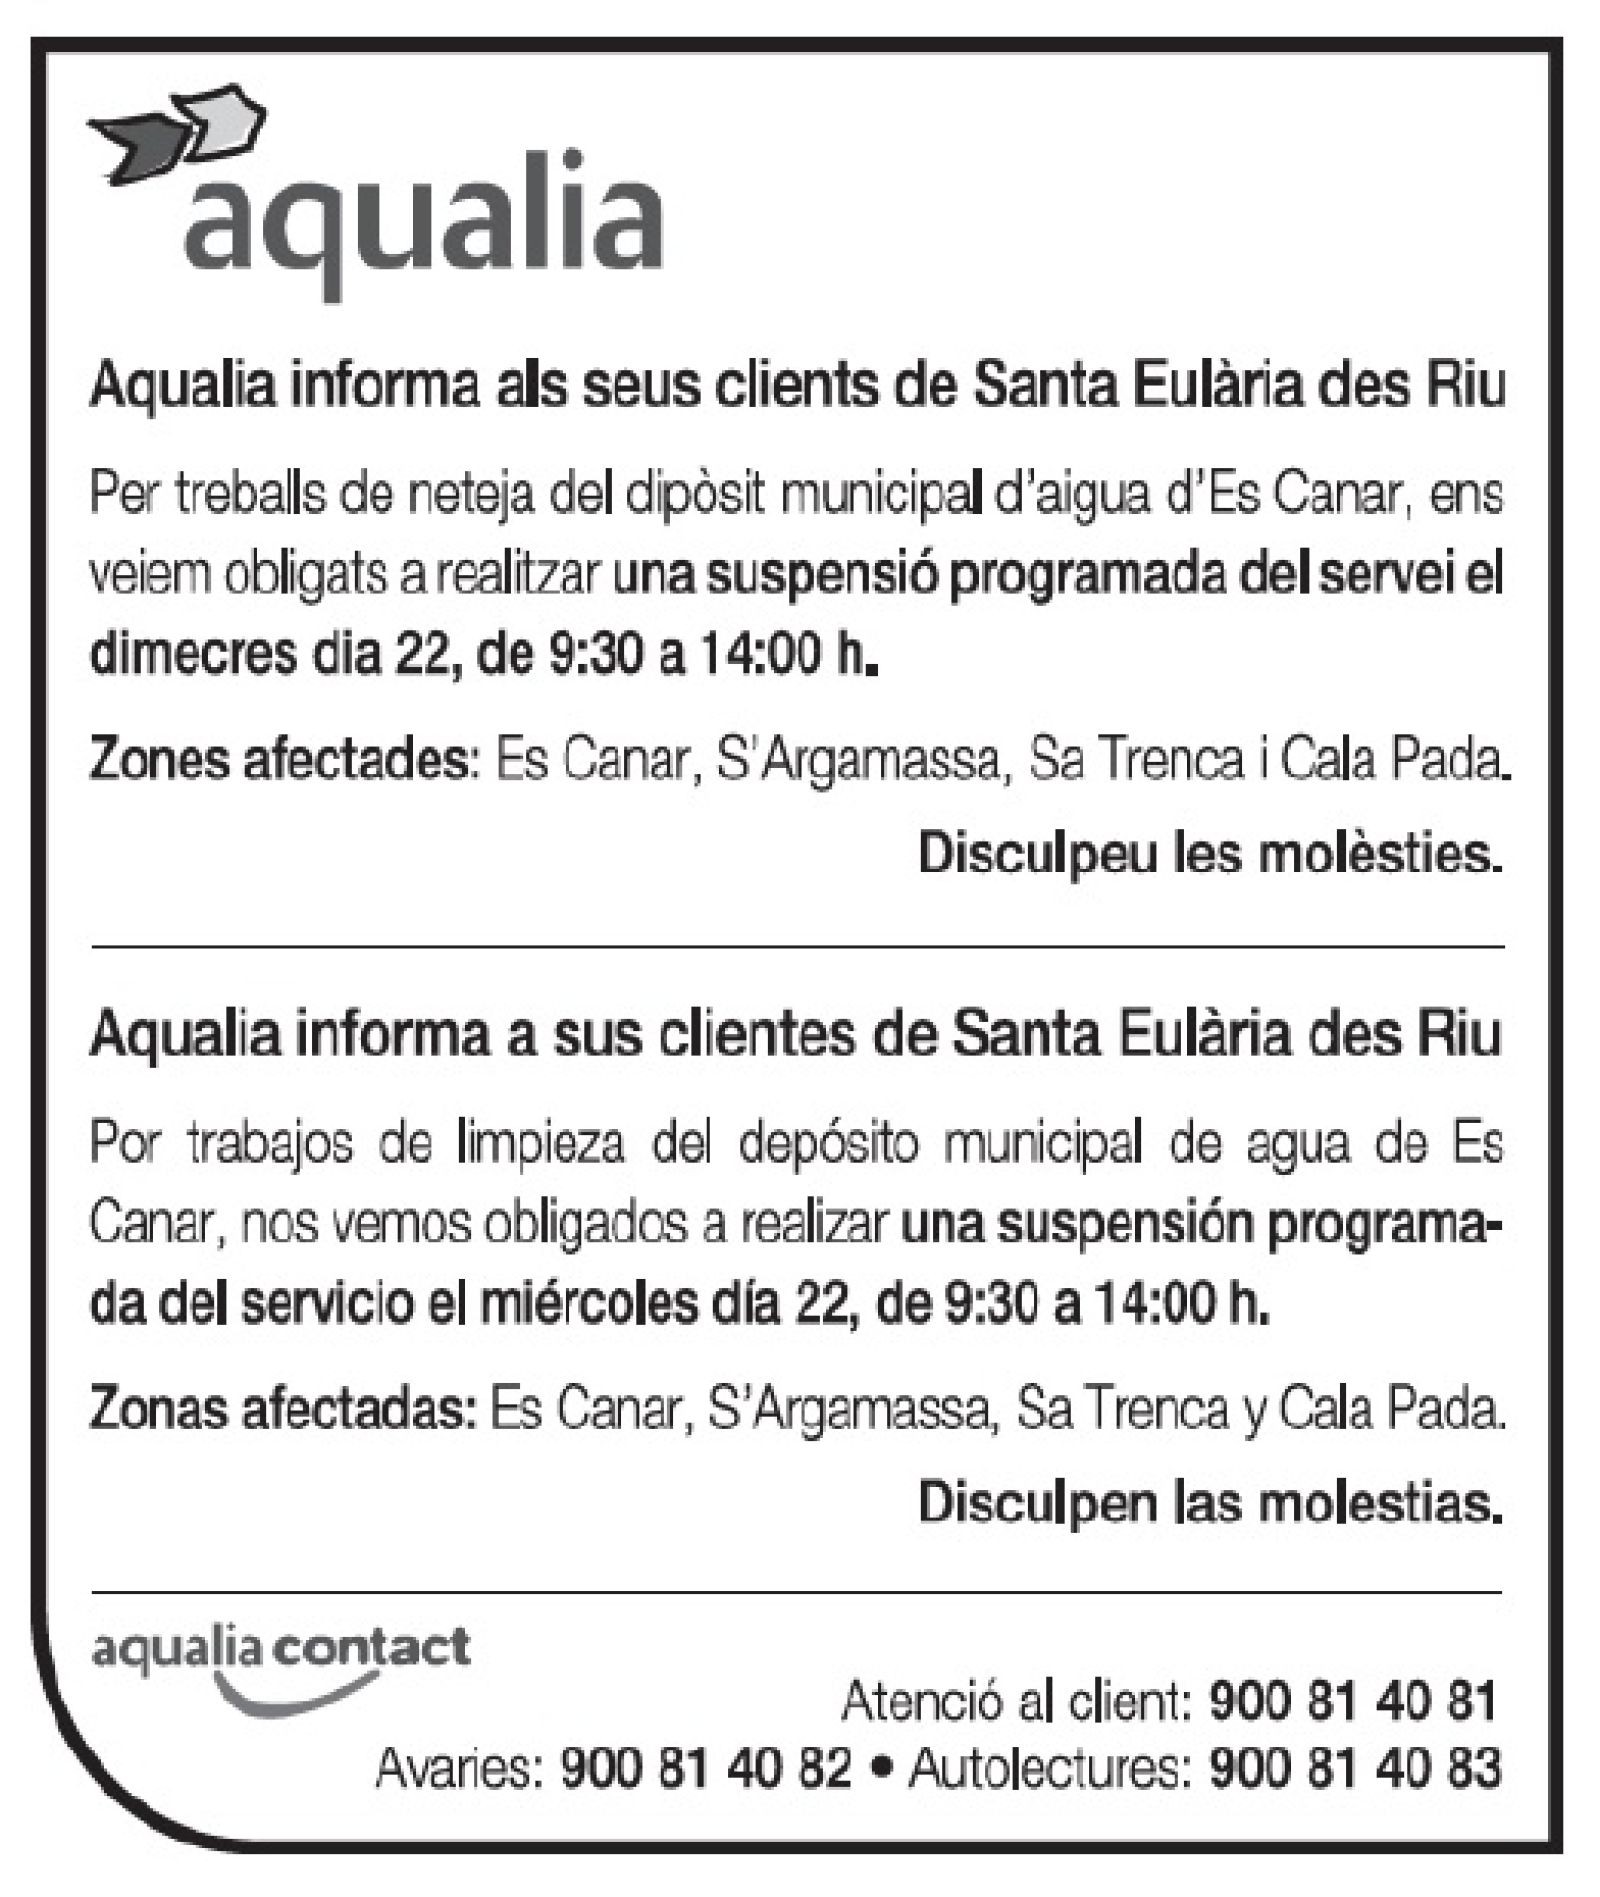 Suspensión temporal del suministro de agua en zonas de Santa Eulària des Riu el 22 de marzo.